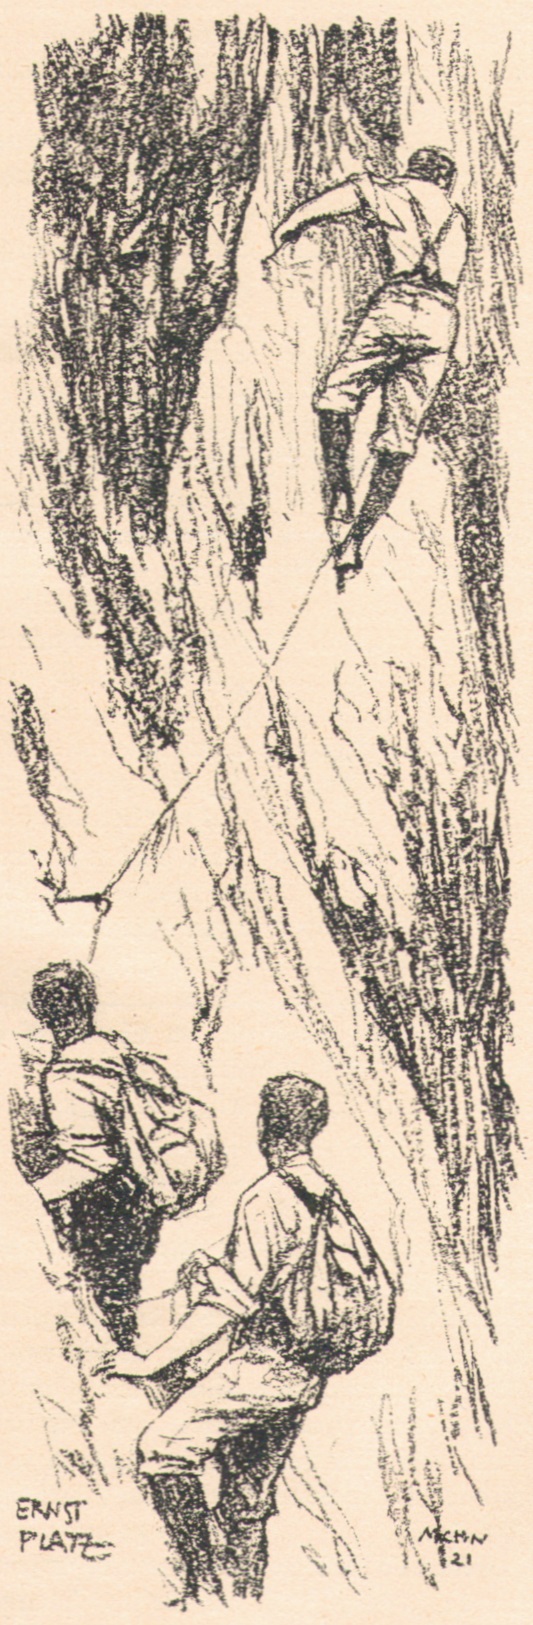 Ernst Platz - Klettern 1921_1p.jpg